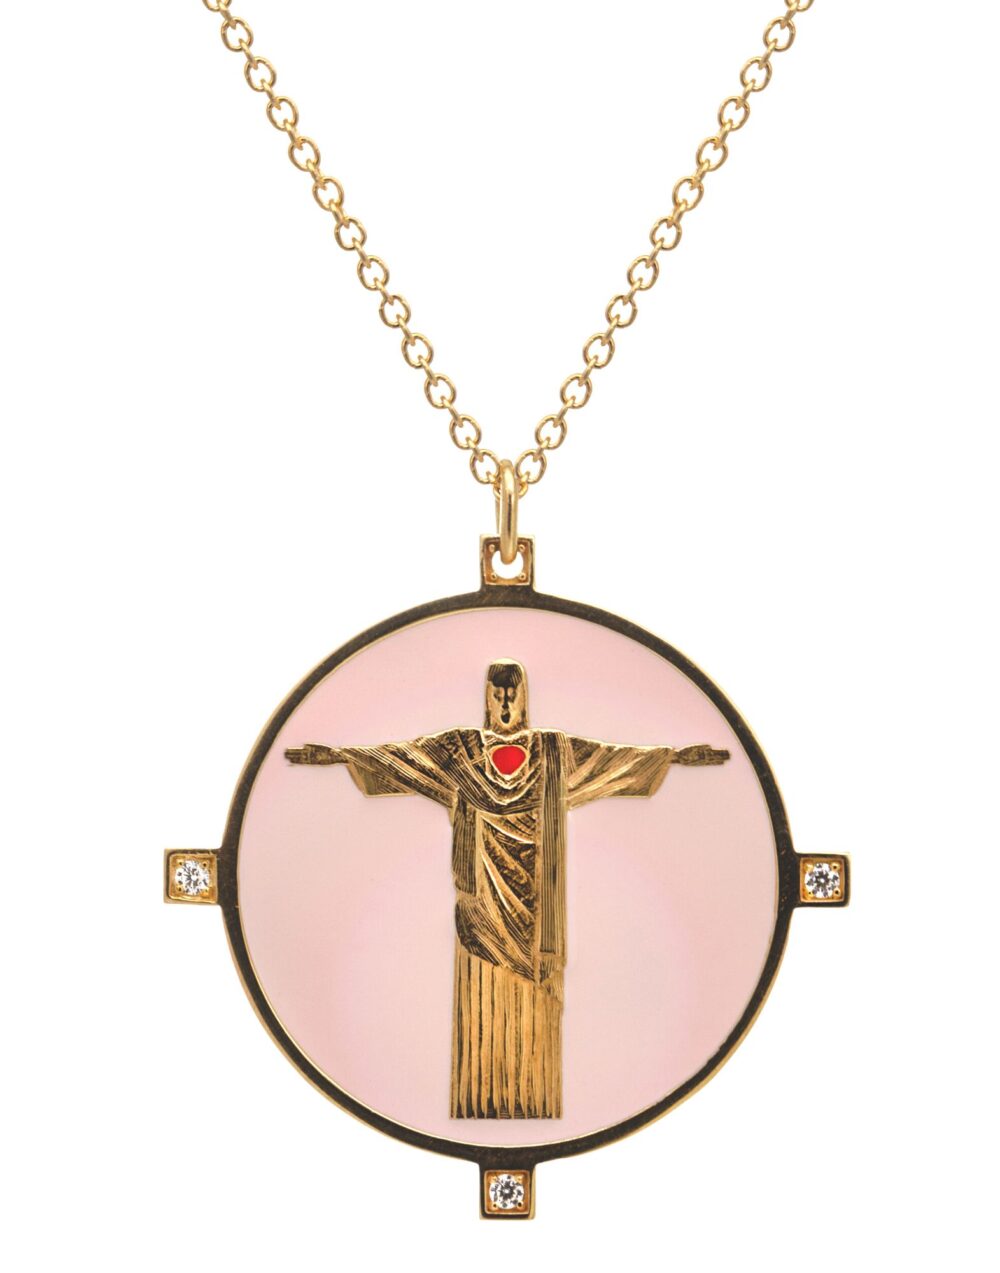 Halskette aus rosafarbenem Emaille, Schmuck Thais Bernardes 925 Silber vergoldet